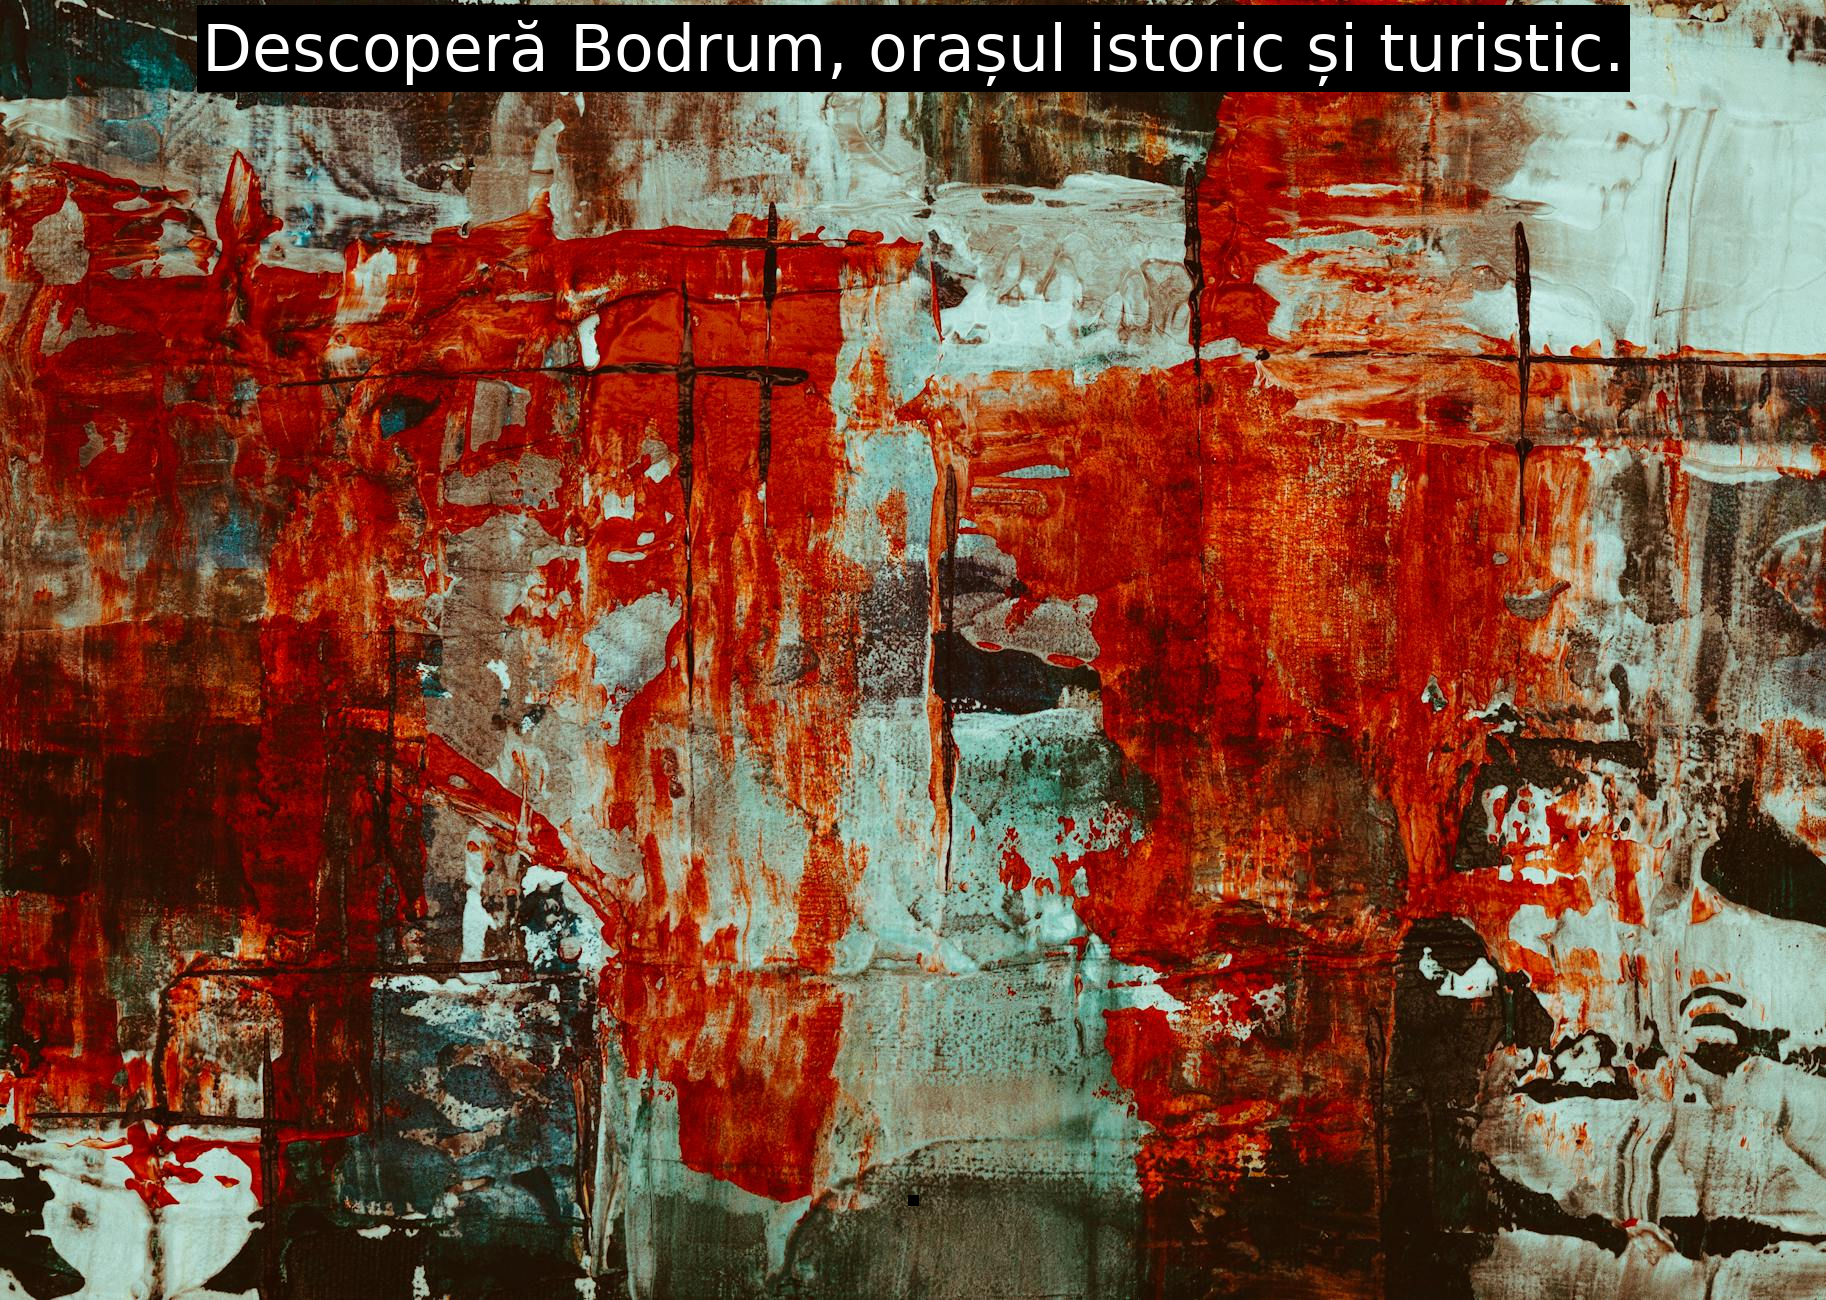 Descoperă Bodrum, orașul istoric și turistic.